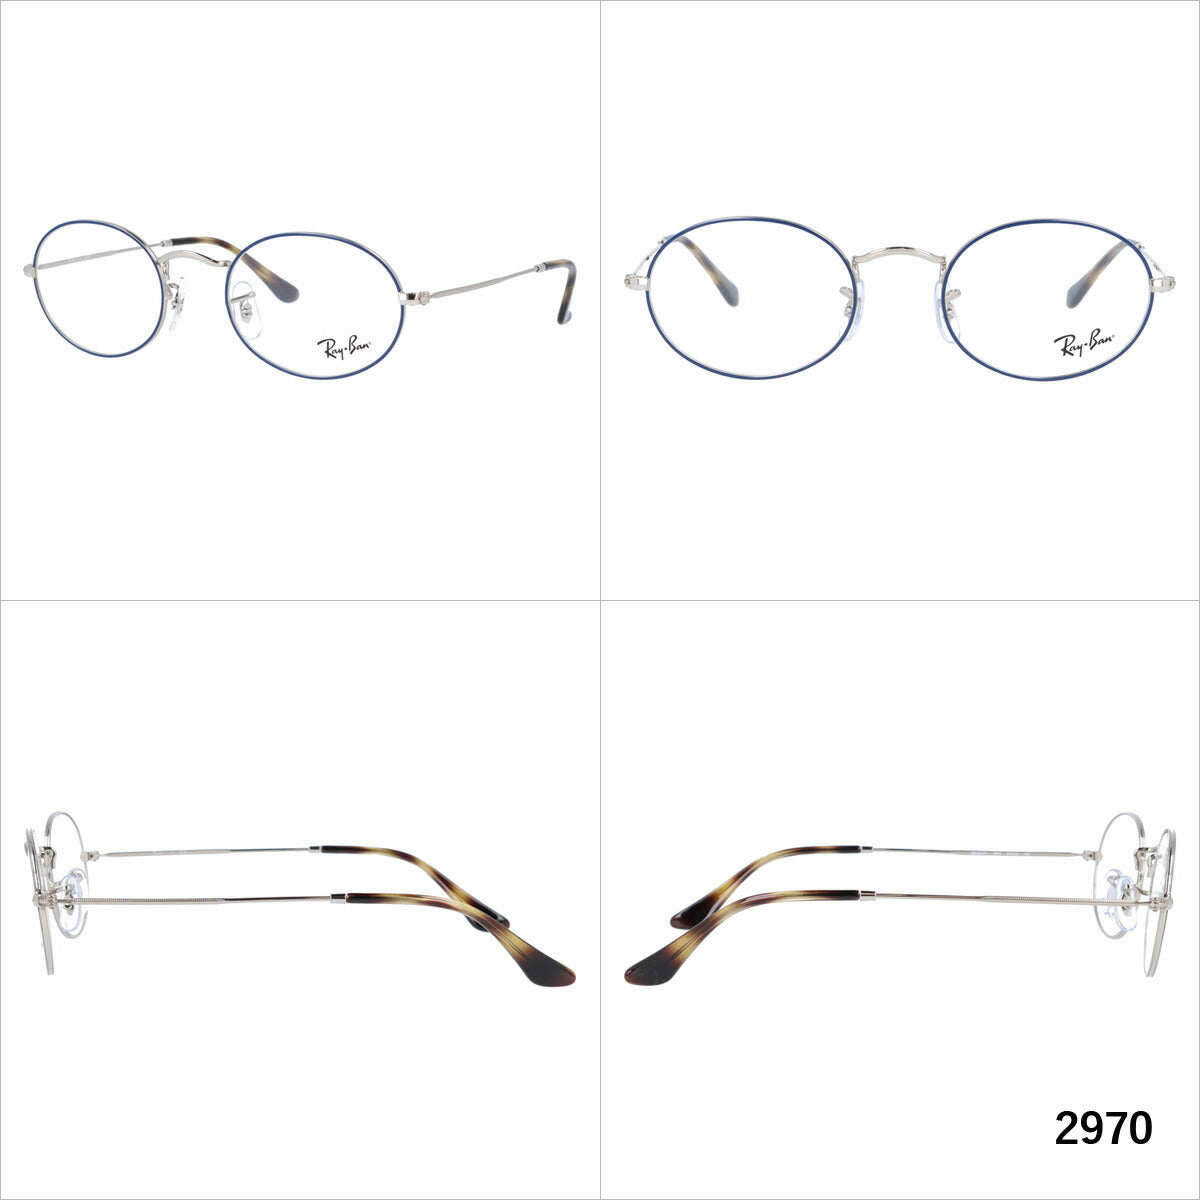 レイバン メガネ フレーム オーバル RX3547V 2970・2991 51 オーバル型 メンズ レディース 眼鏡 度付き 度なし 伊達メガネ ブランドメガネ 紫外線 ブルーライトカット 老眼鏡 花粉対策 OVAL Ray-Ban